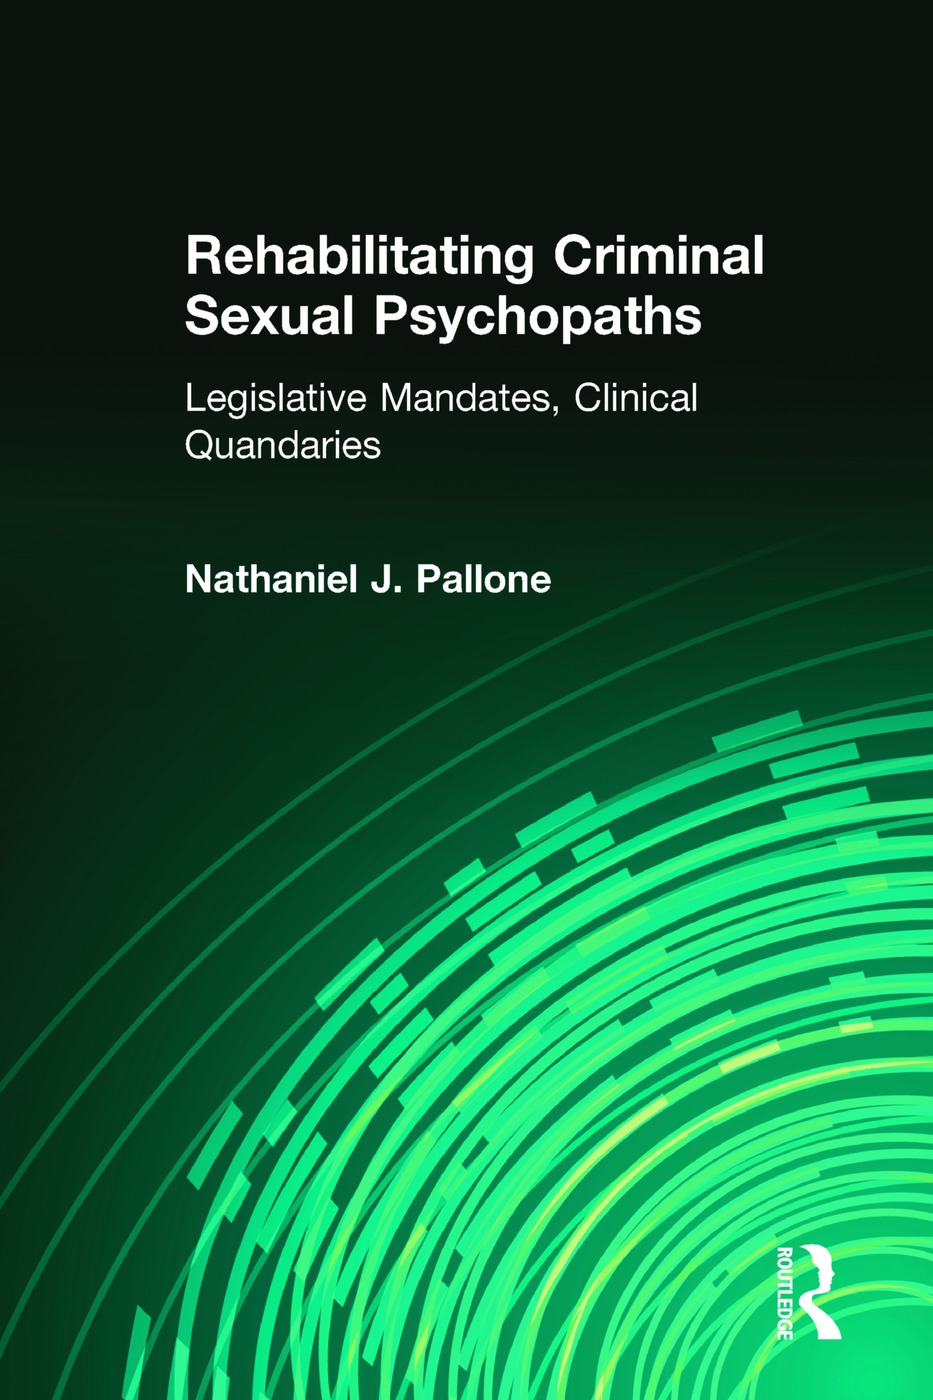 Rehabilitating Criminal Sexual Psychopaths: Legislative Mandates, Clinical Quandaries